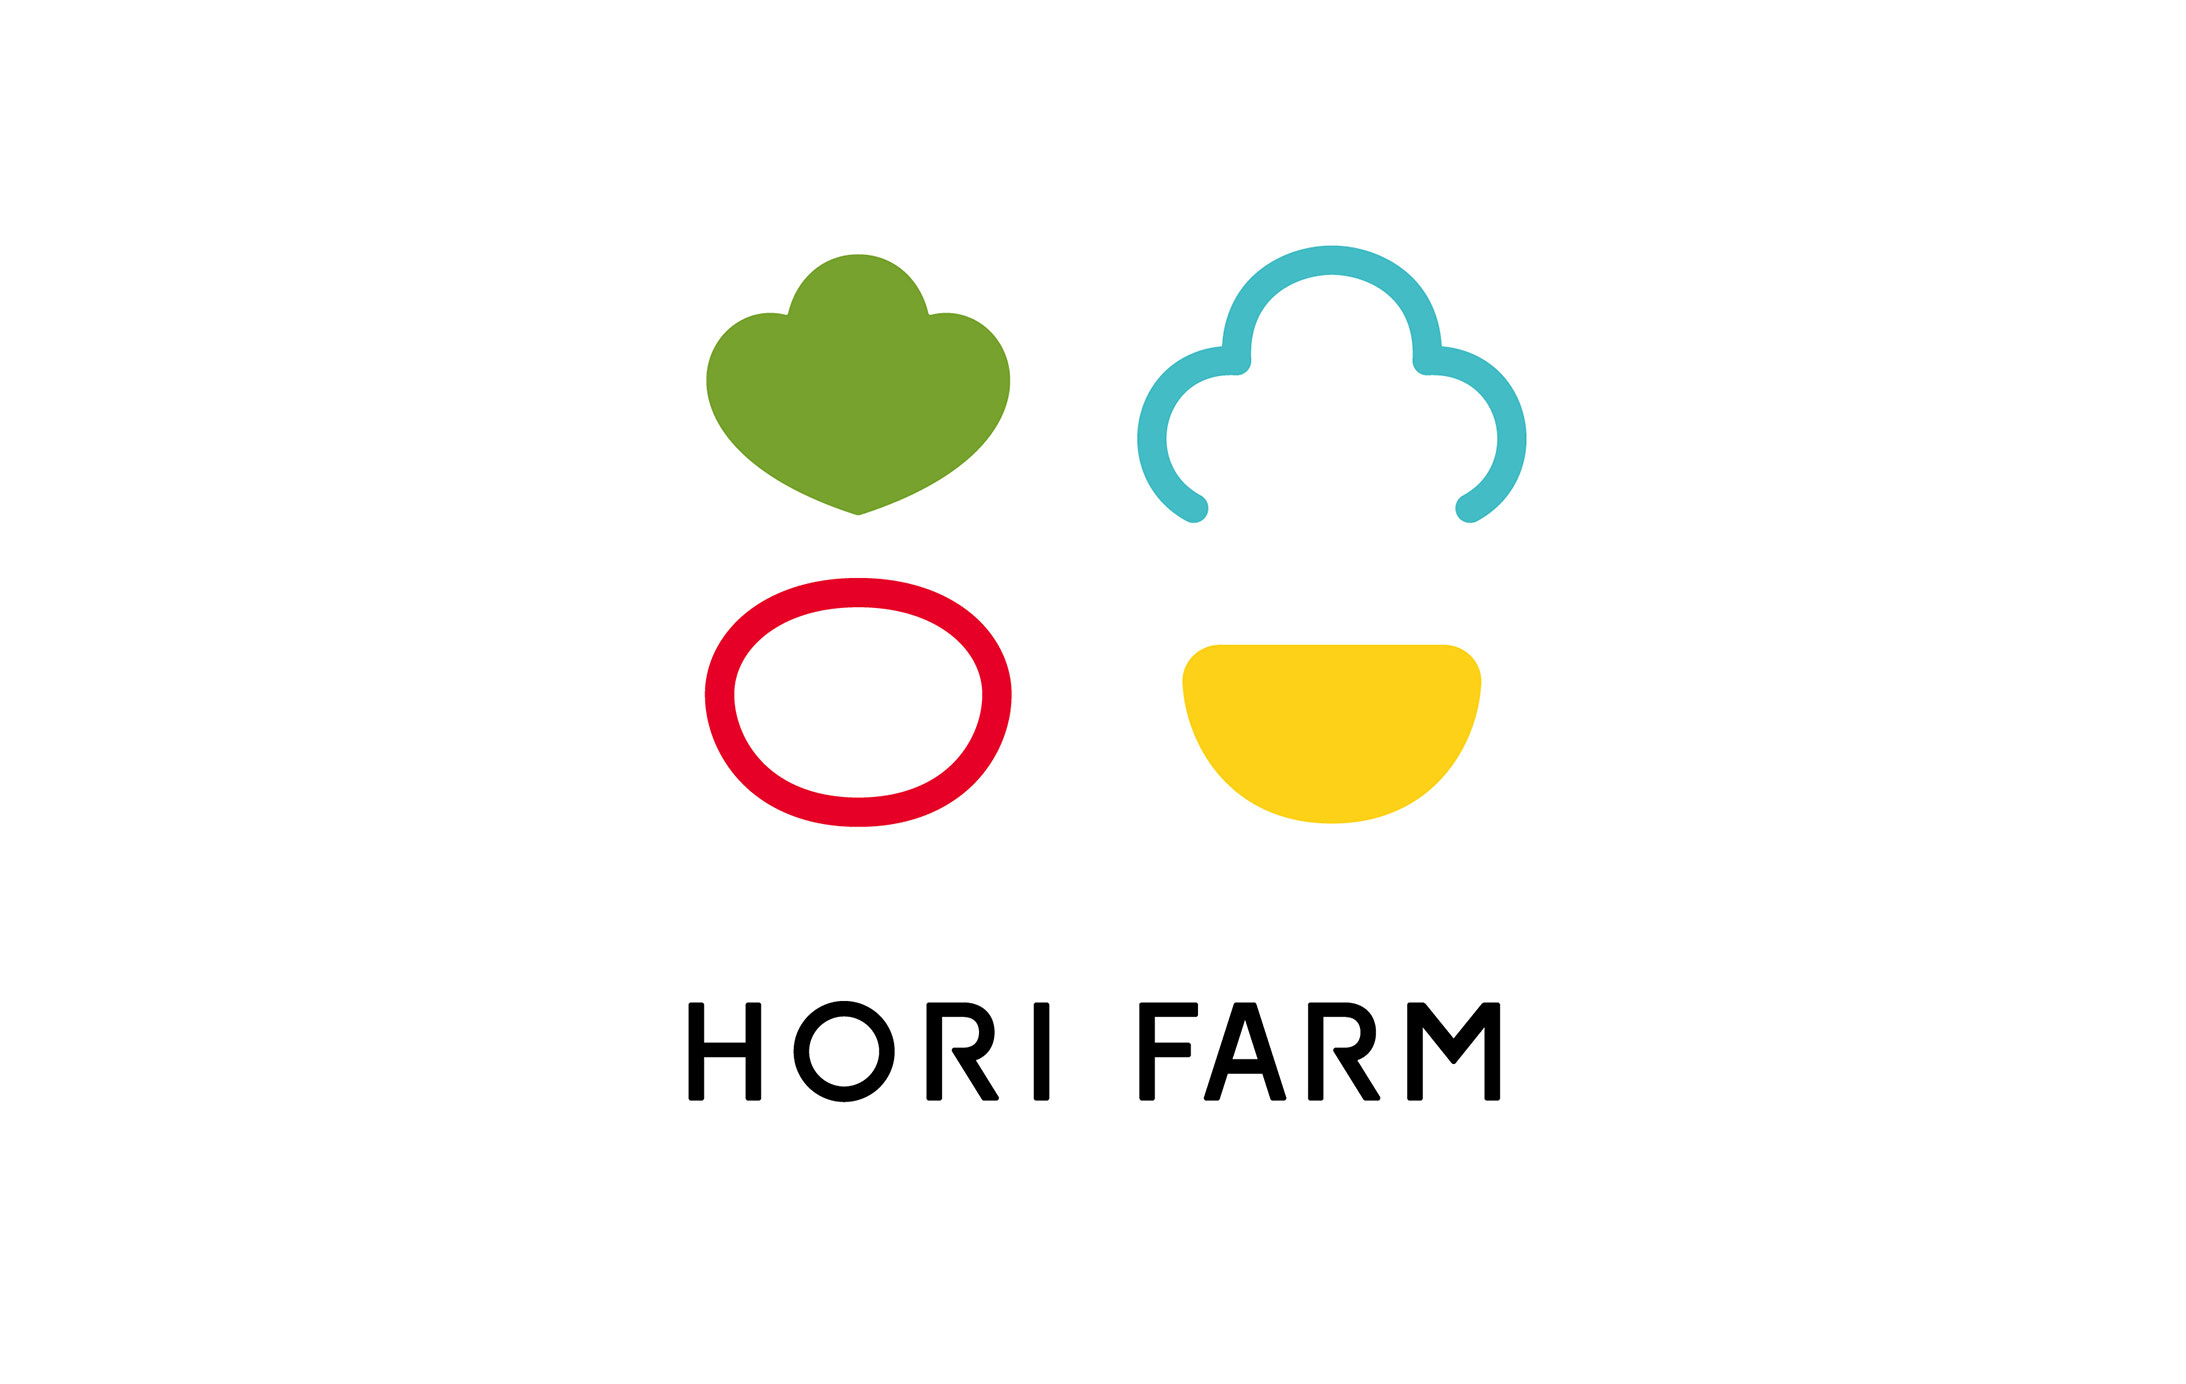 HORI FARM